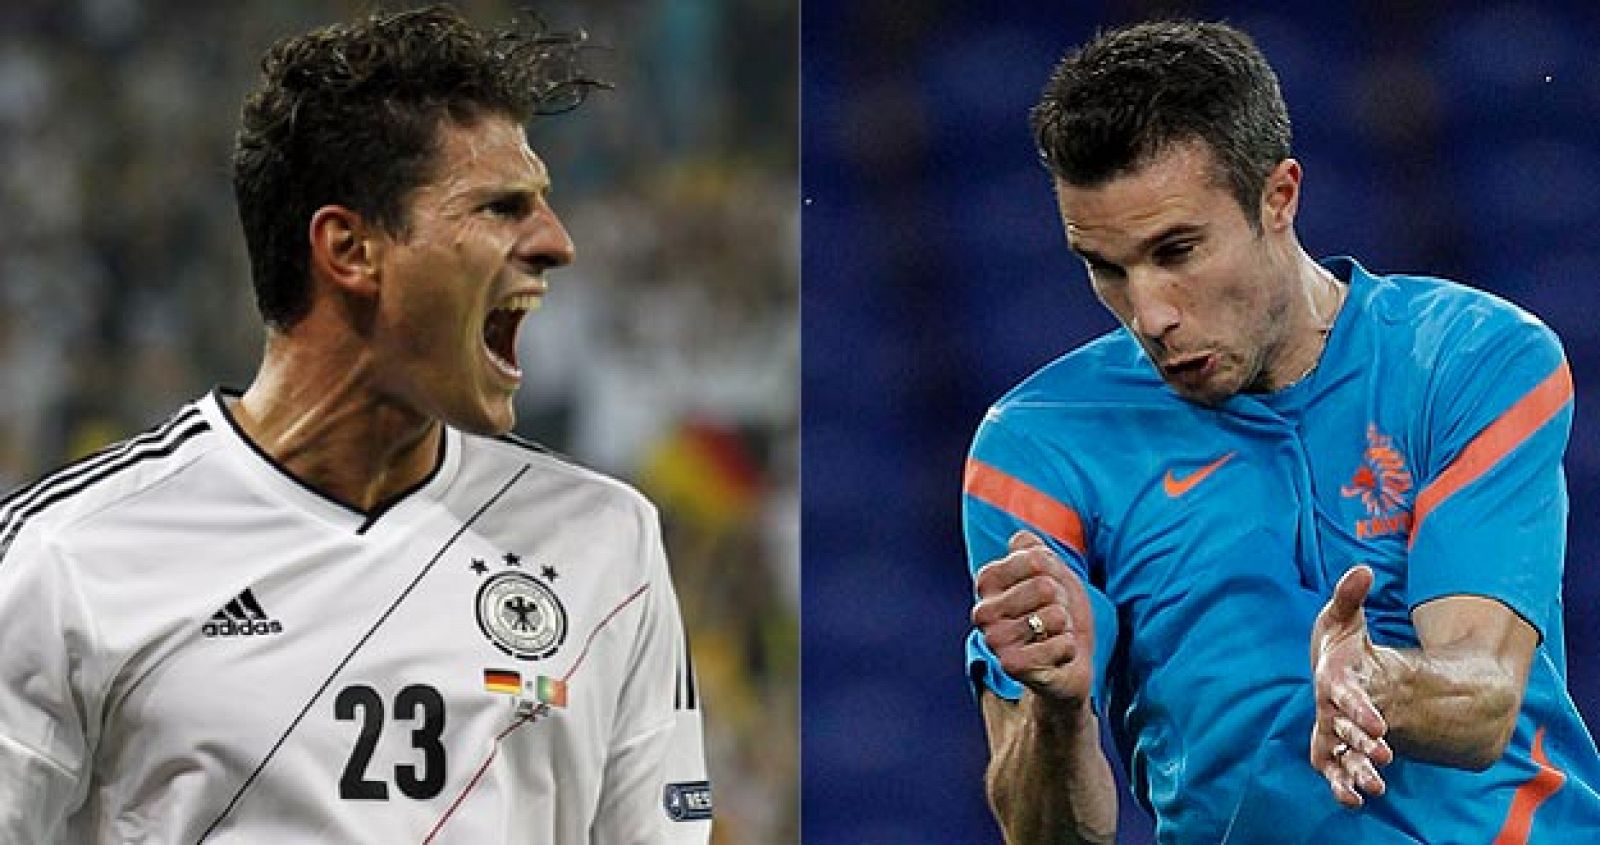 Los delanteros Mario Gómez, de Alemania, y Van Persie, de Holanda, se verán las caras en la Eurocopa 2012.